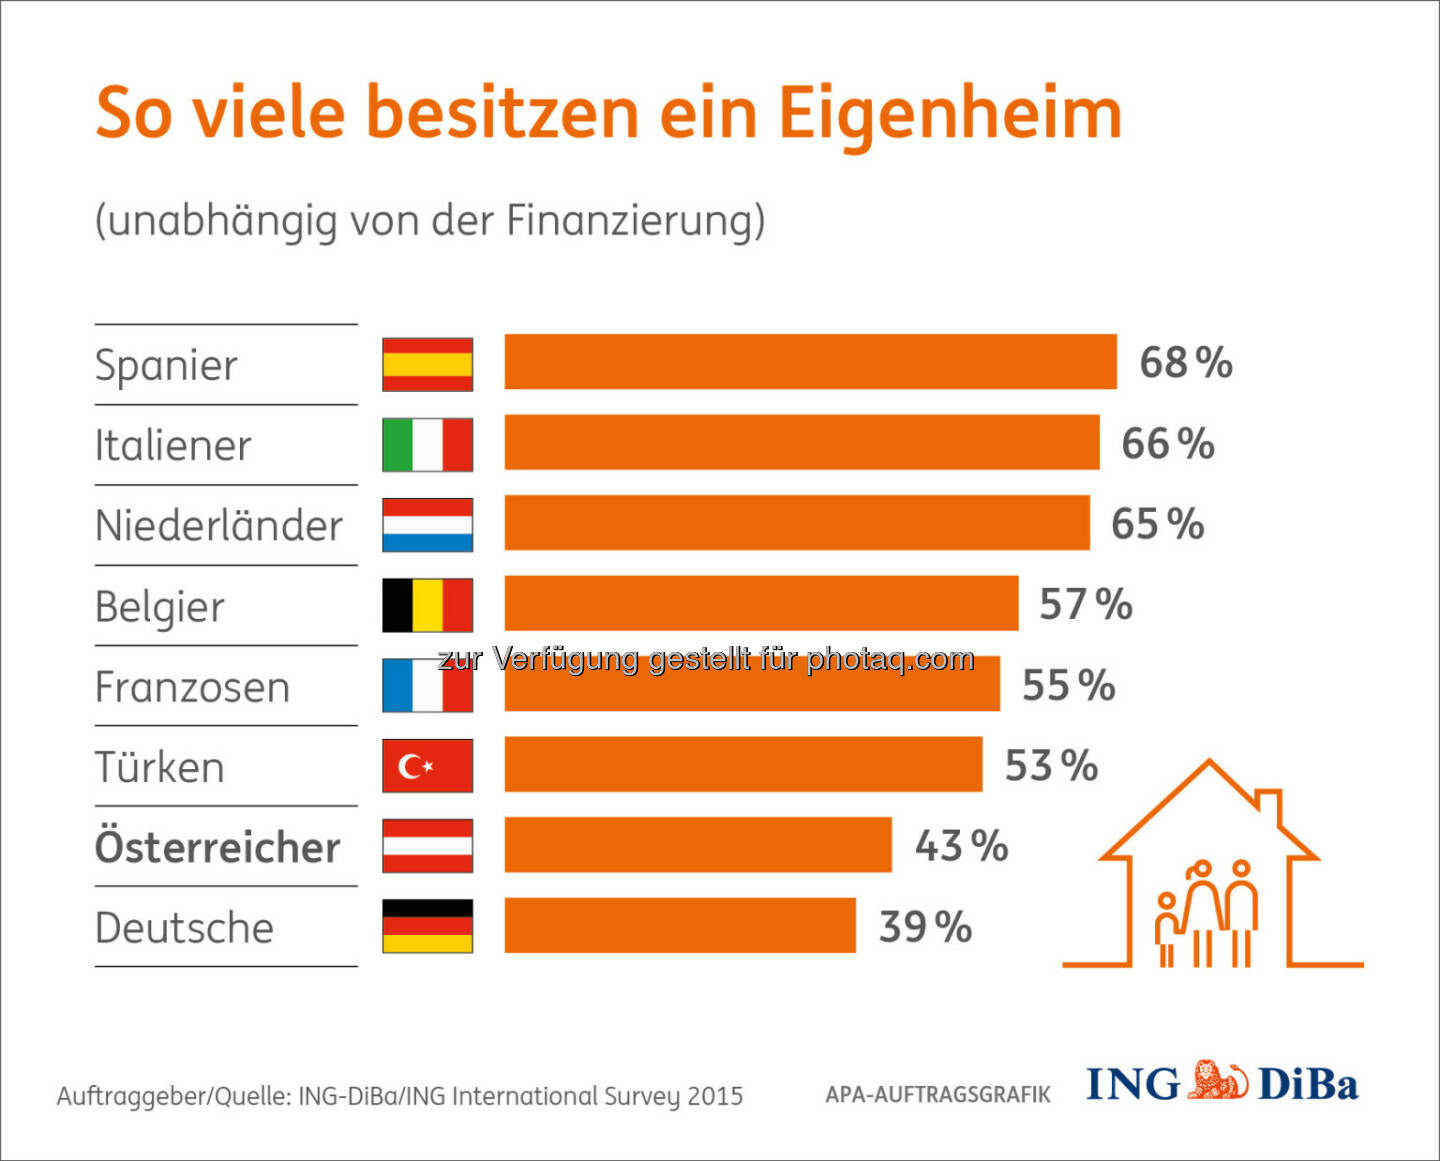 So viele besitzen ein Eigenheim : Wir kaufen, um zu bleiben! : Umfrage im Auftrag der ING-DiBa : 78% der Österreicher sehen den IIS-Daten zufolge in den eigenen vier Wänden die finanziell bessere Lösung und würden dies auf jeden Fall einer Miete vorziehen. Aber: aktuell sind nur 43% (der bei der Onlineumfrage Befragten) im Besitz eines Eigenheims, egal ob bereits schuldenfrei oder noch mit Kreditverpflichtung. Interessant, dass die Österreicher damit fast am Ende der Europaskala zu finden sind : (c) ING-DiBa/ING International Survey 2015